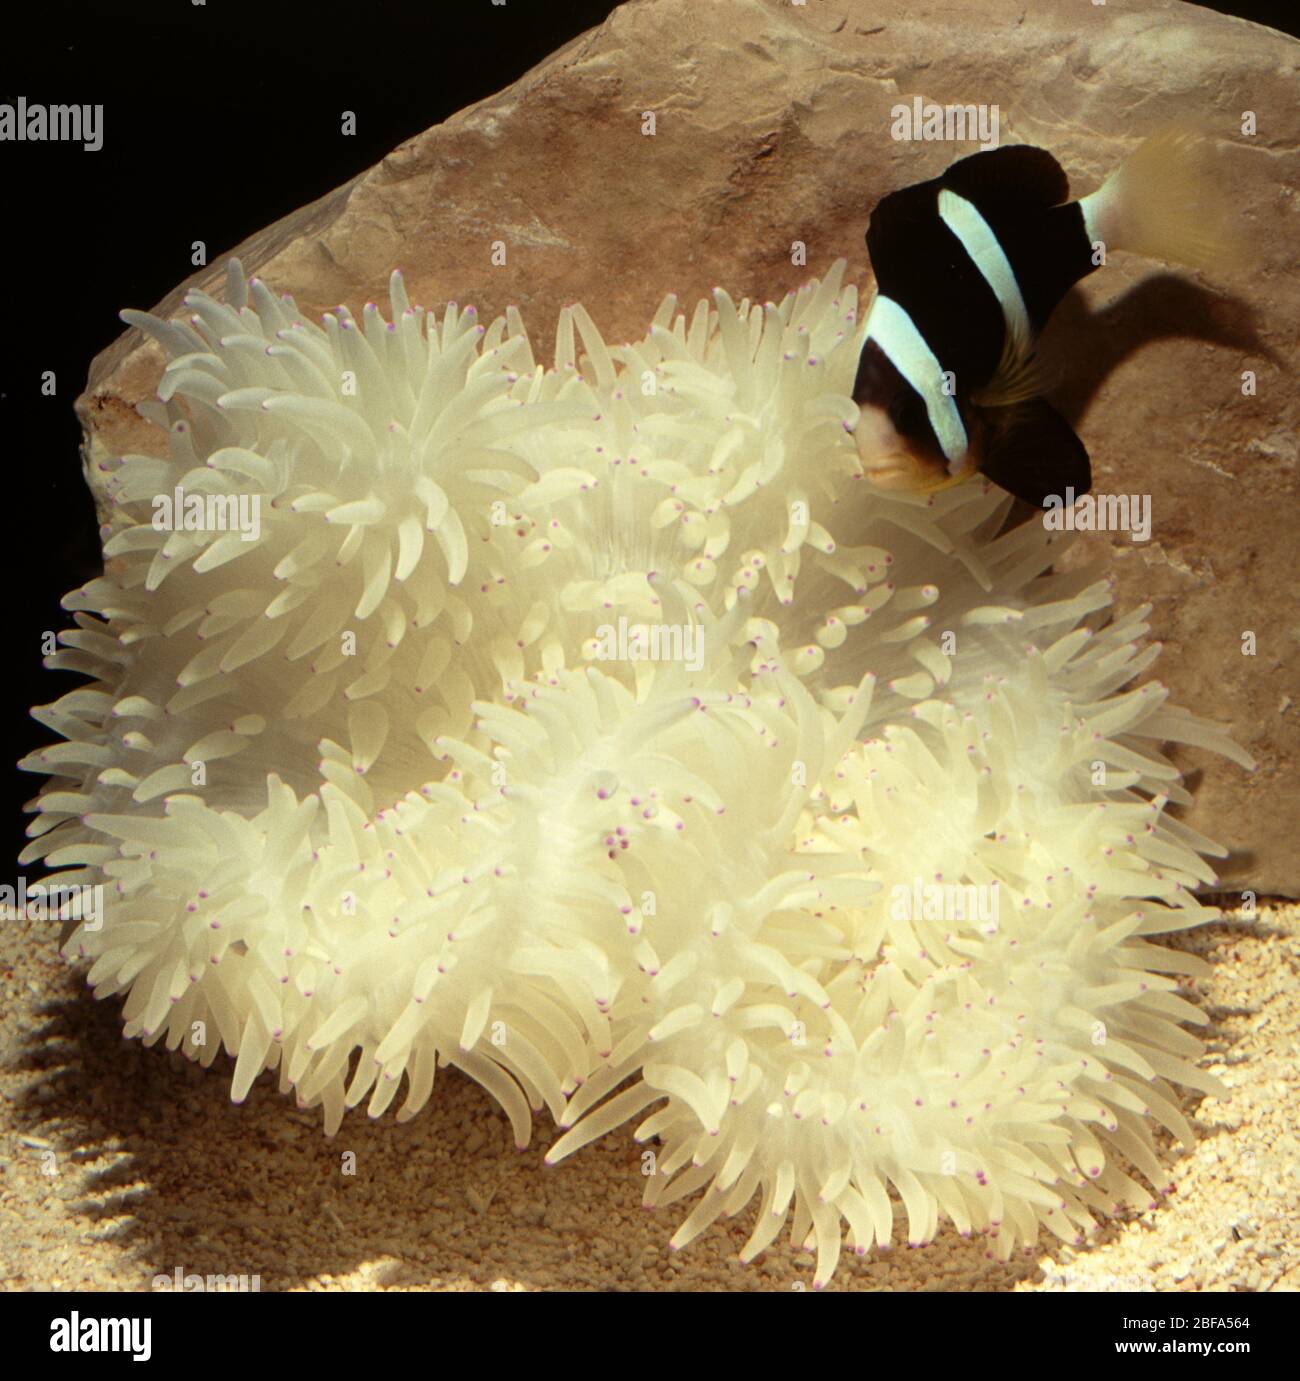 Clark's anemonefish (Amphiprion clarkii) symbiotic with Giant anemone, Heteractis crispa Stock Photo